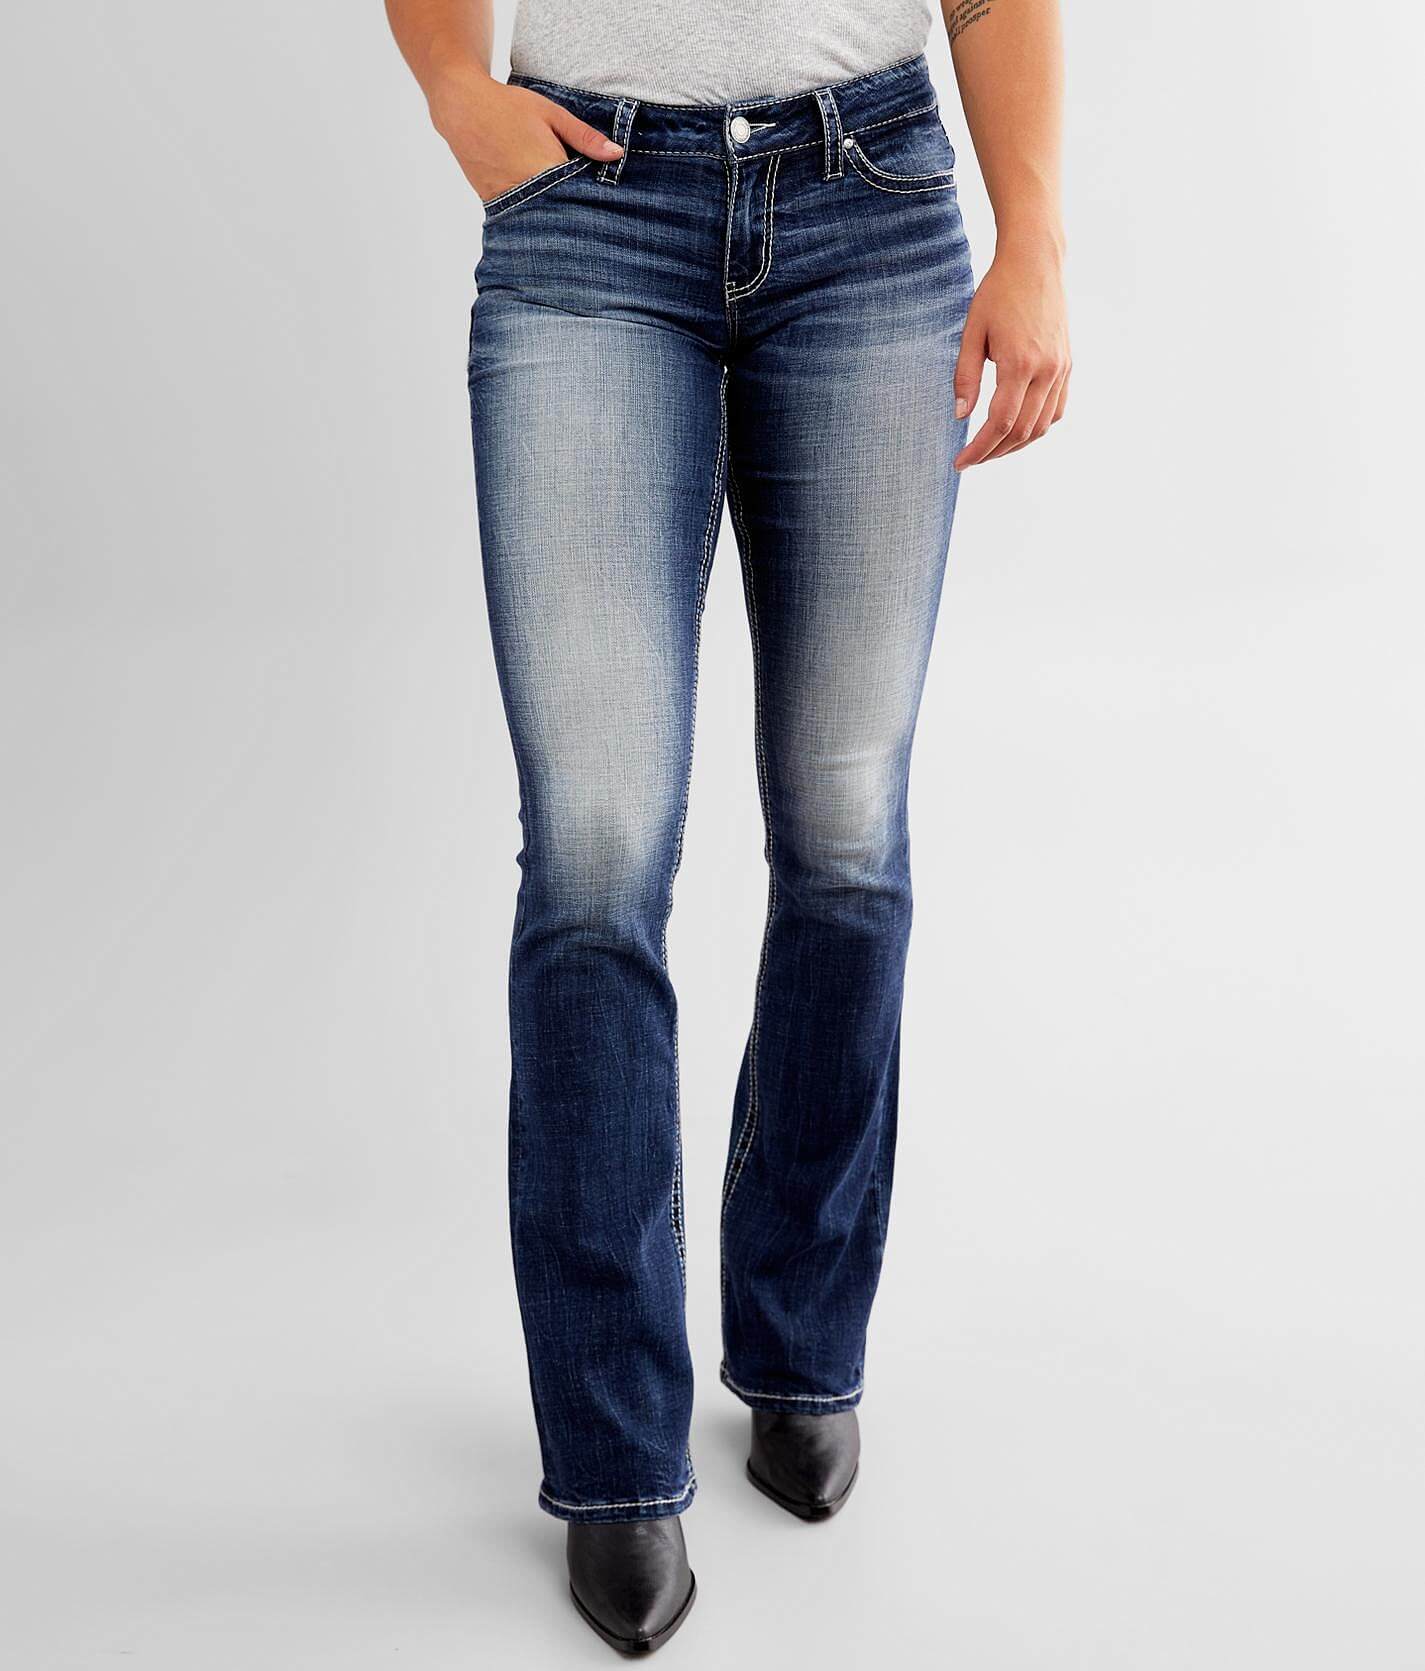 women's petite black bootcut jeans